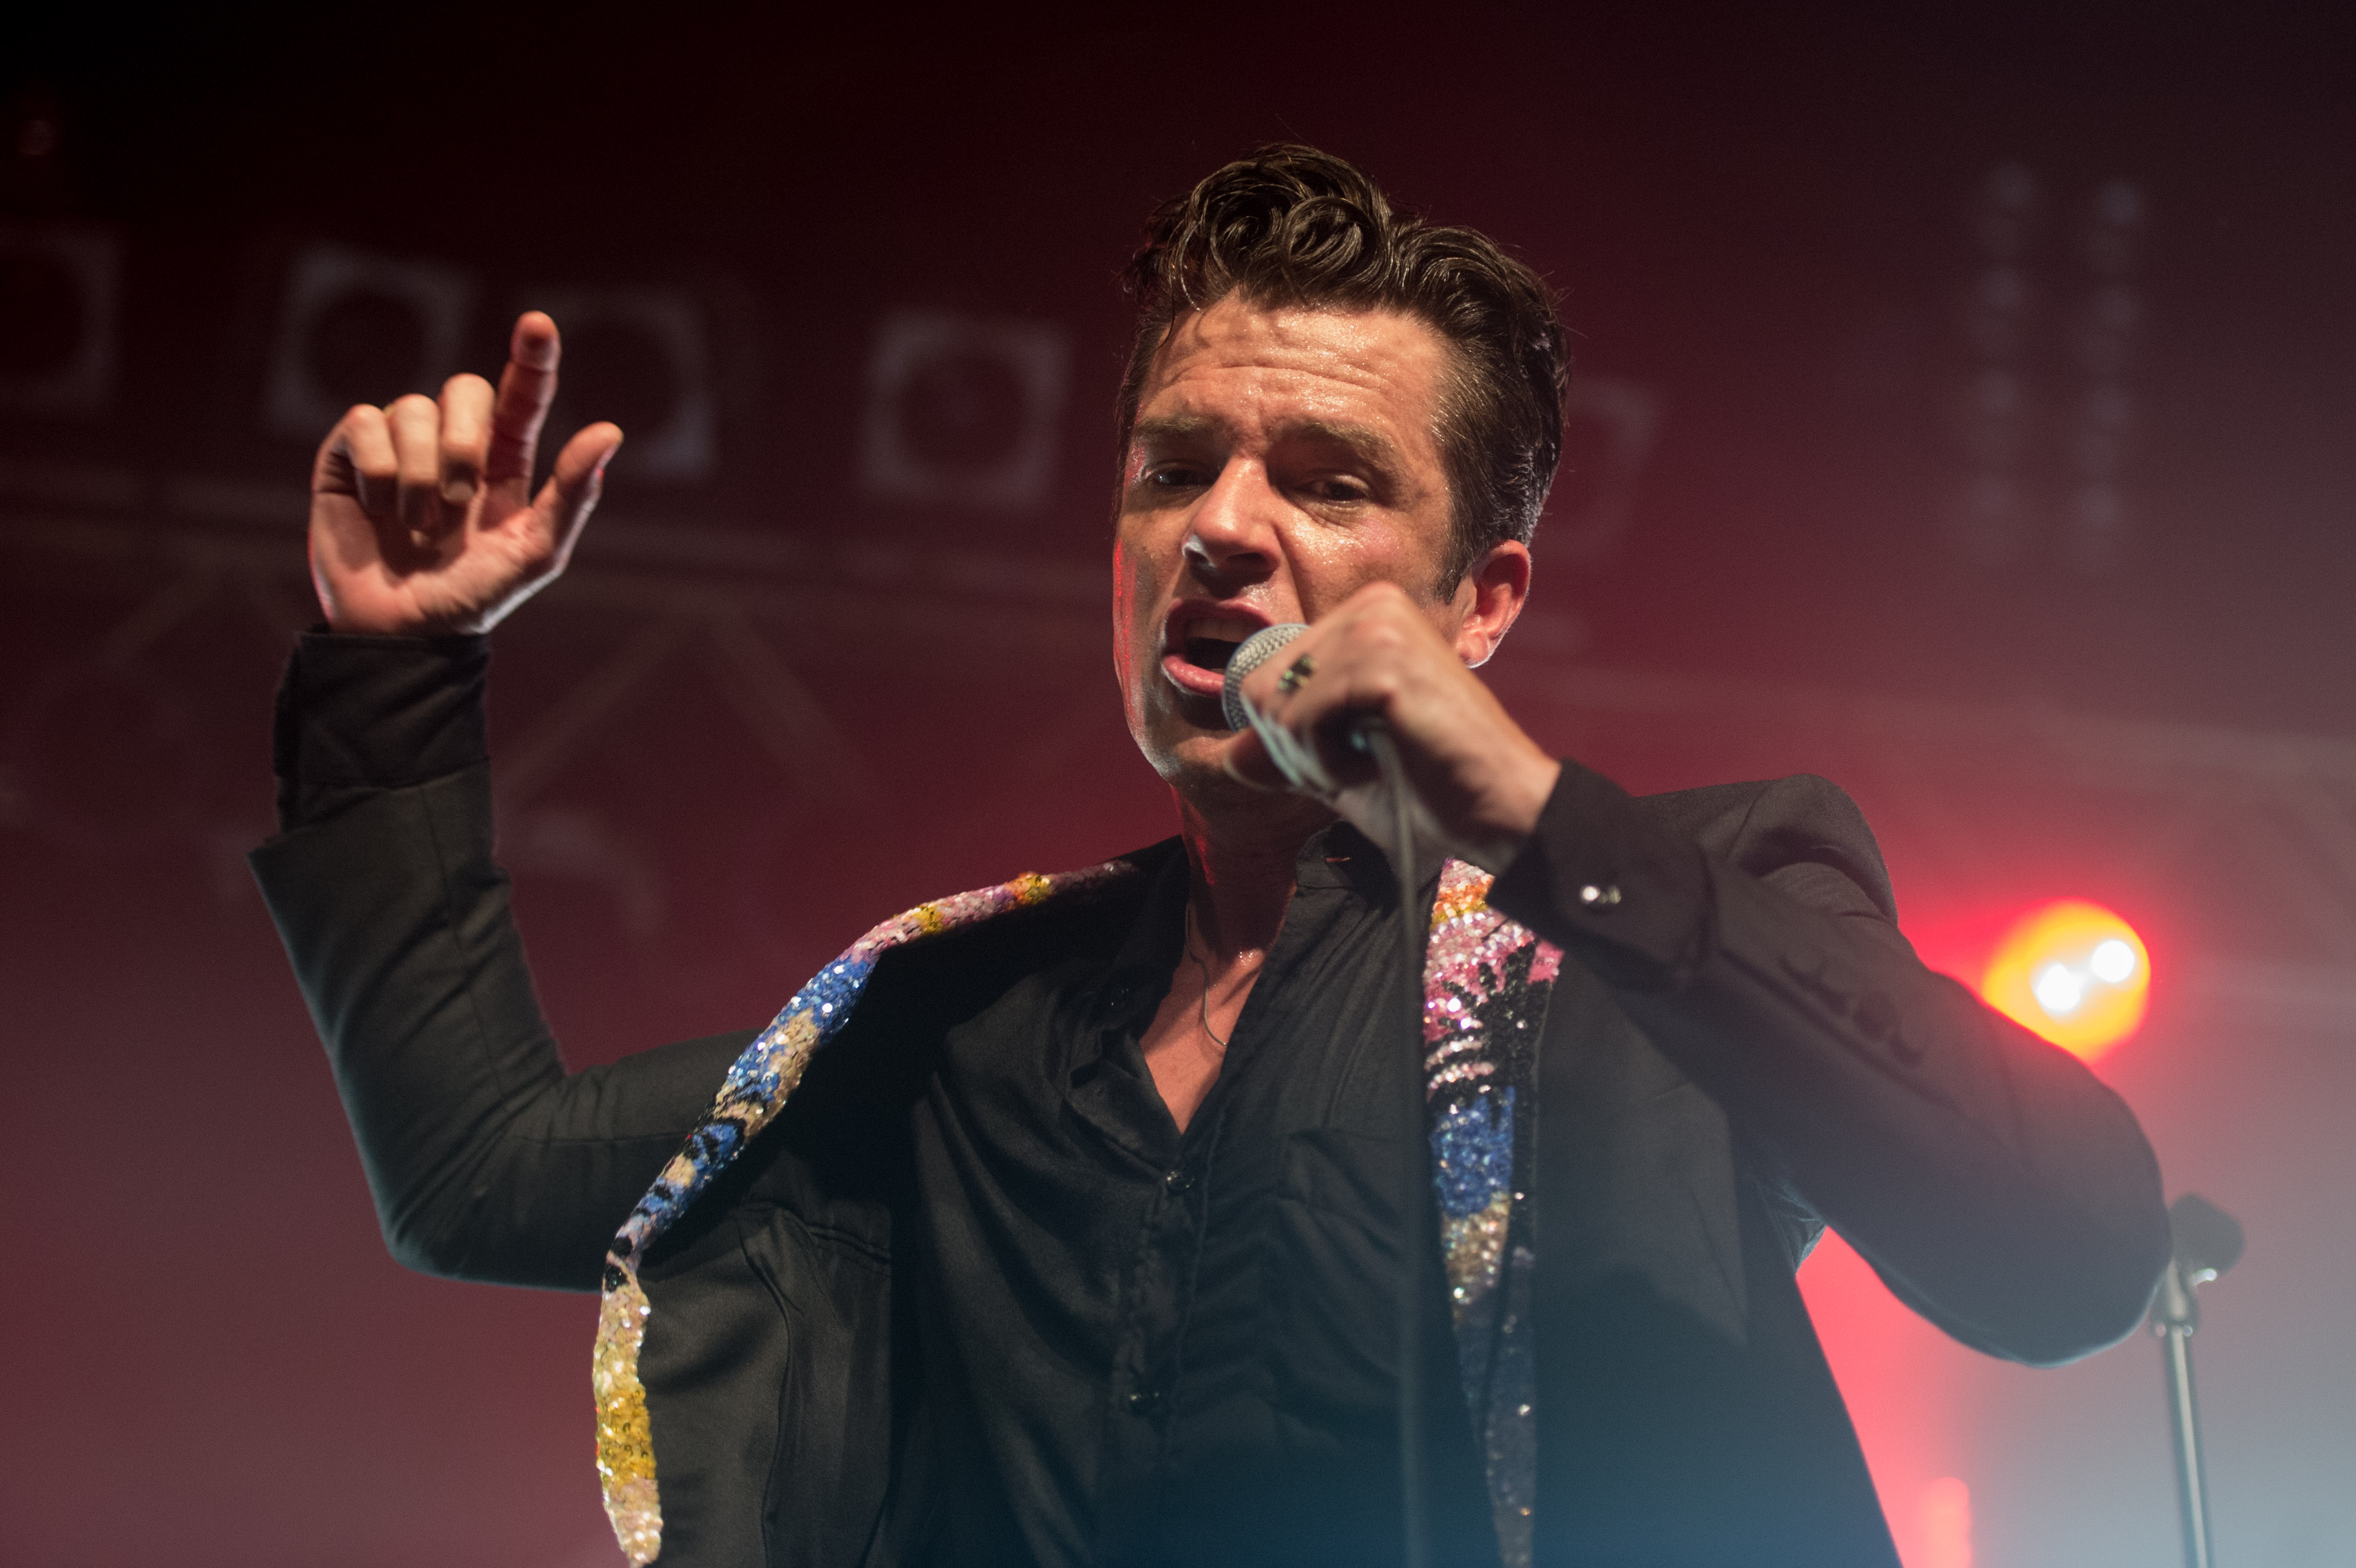 Um Haltung bemüht: Brandon Flowers mit The Killers oder dem, was davon übrig ist, am 15. September 2017 live in Köln